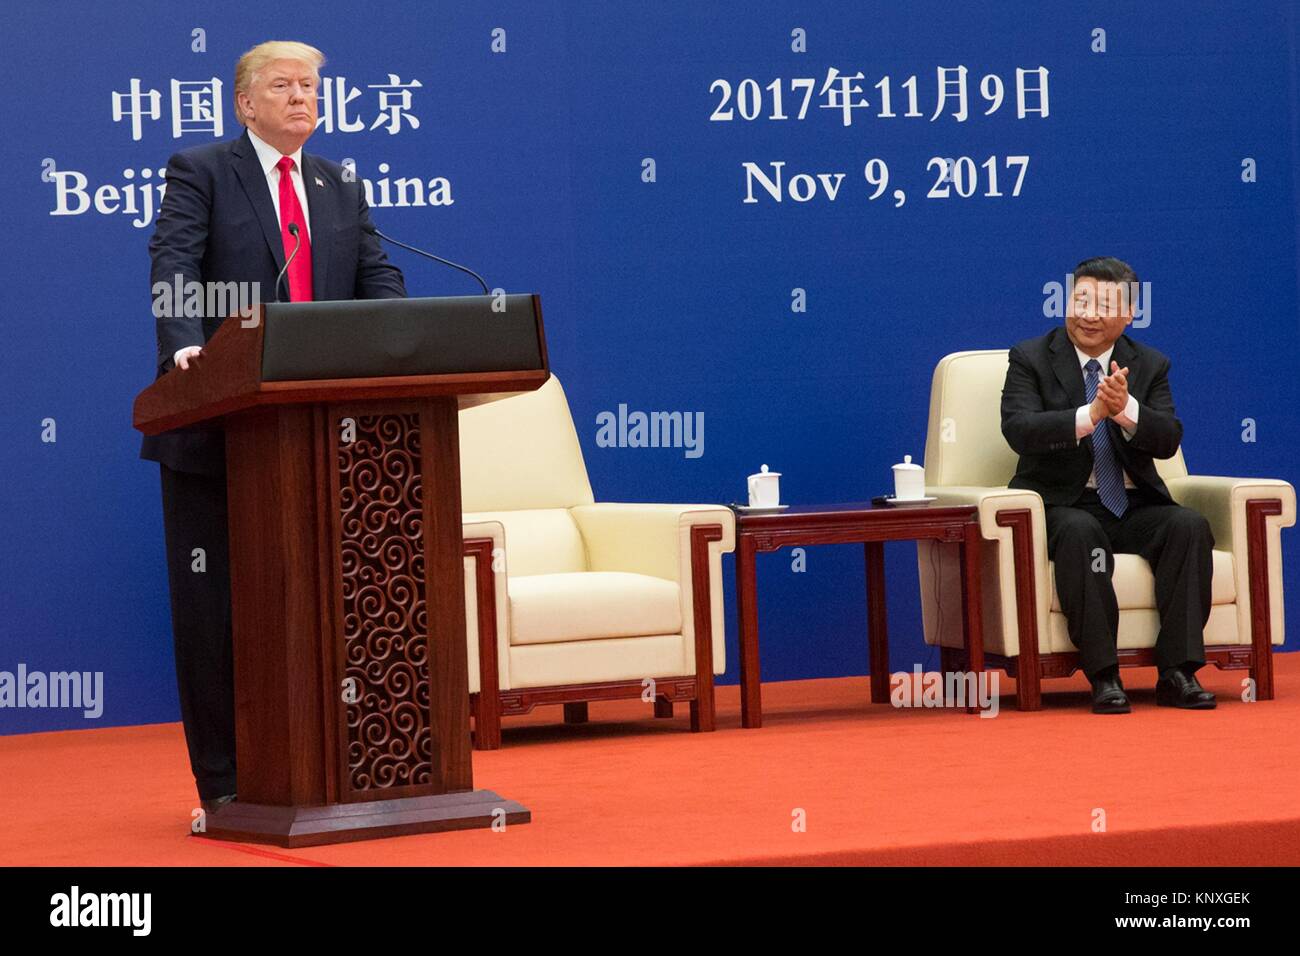 U.S presidente Donald Trump risolve un evento di business come il presidente cinese Xi Jinping guarda su presso la Grande Sala del Popolo Novembre 9, 2017 a Pechino, in Cina. Foto Stock